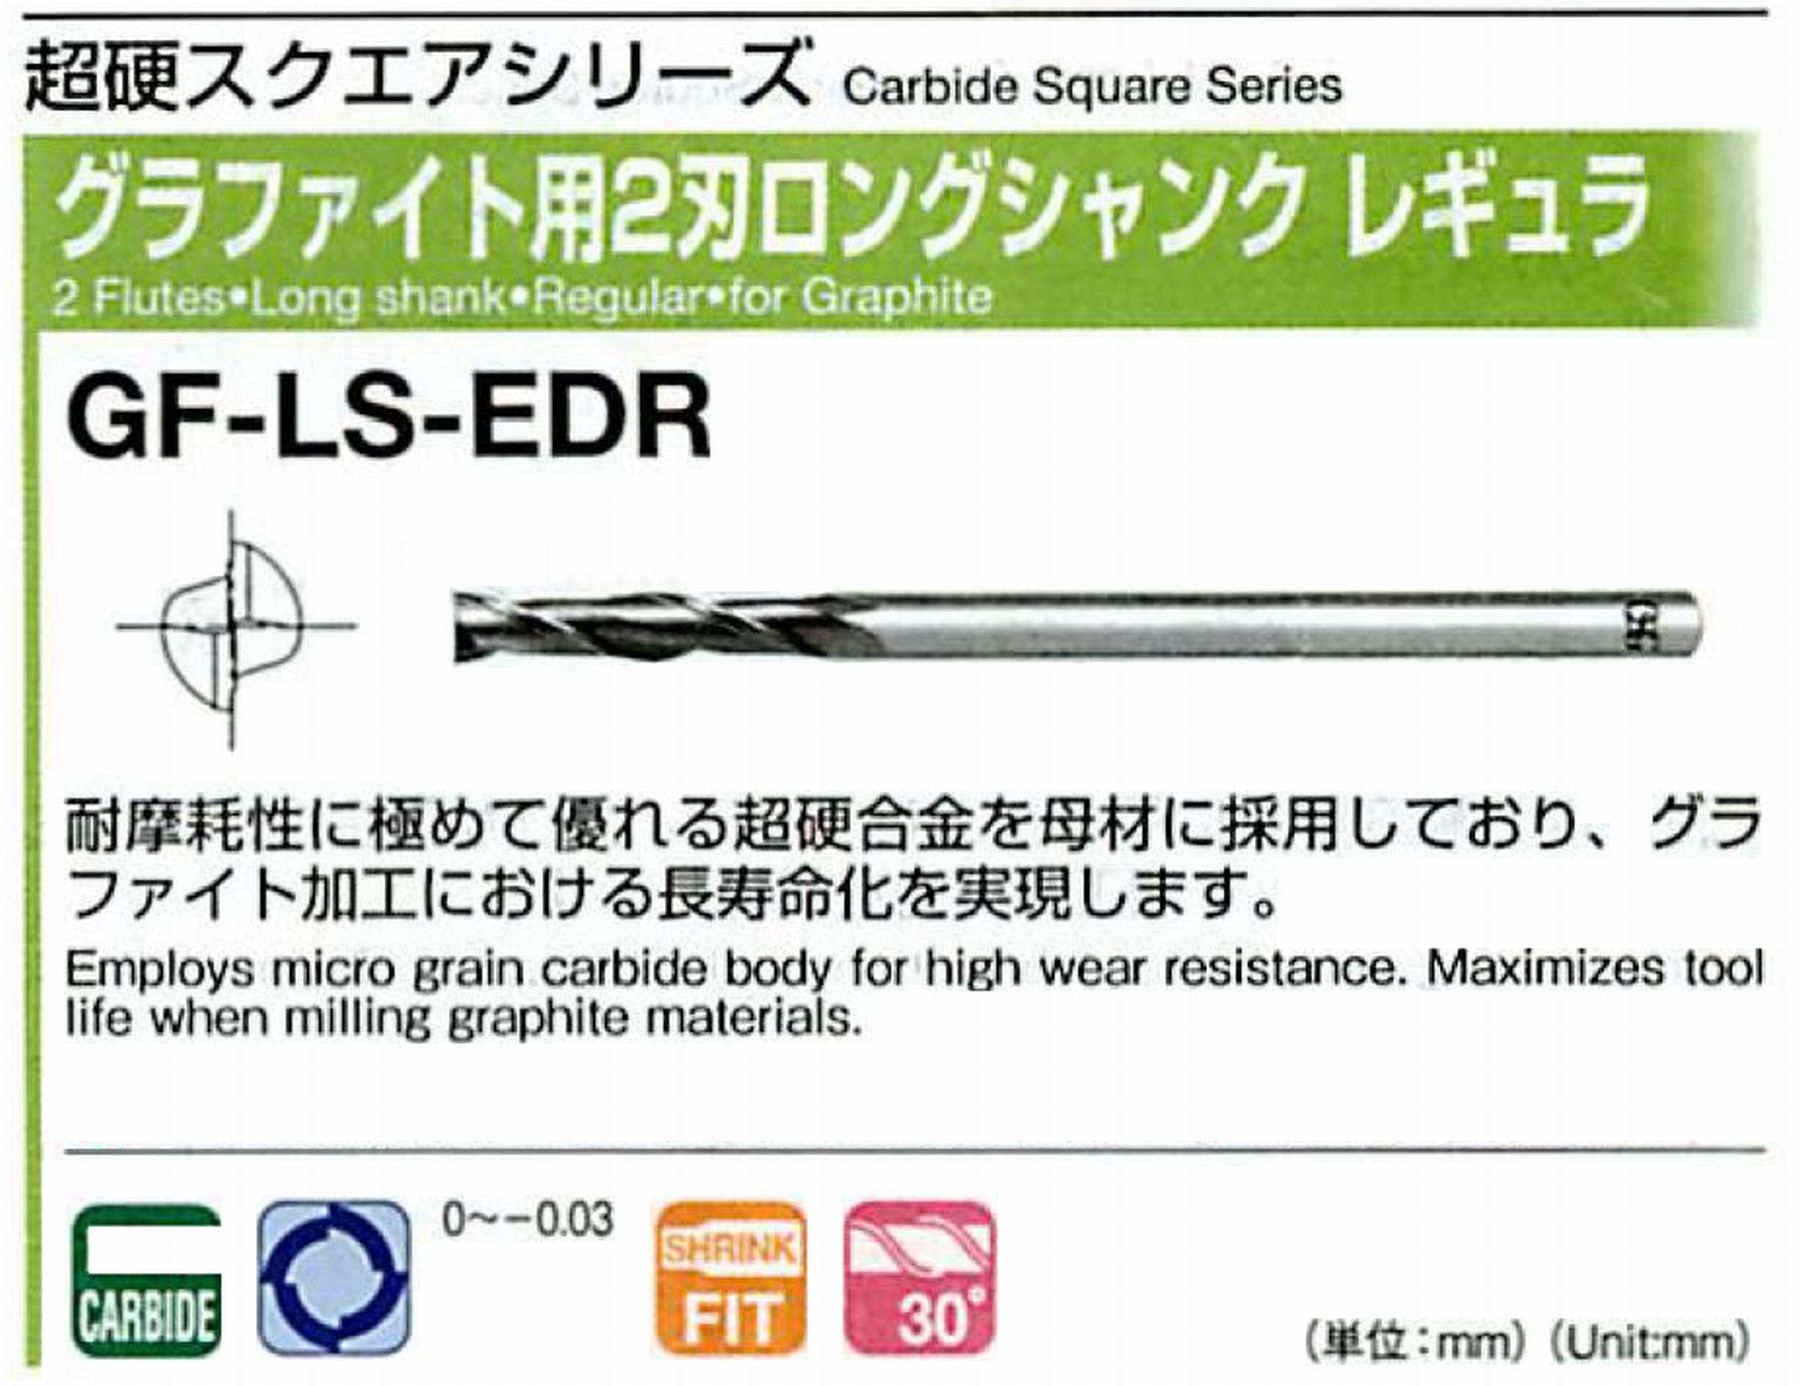 オーエスジー/OSG グラファイト用 2刃ロングシャンクレギュラ GF-LS-EDR 外径12 全長200 刃長65 シャンク径12mm 首下長130 首径11.7